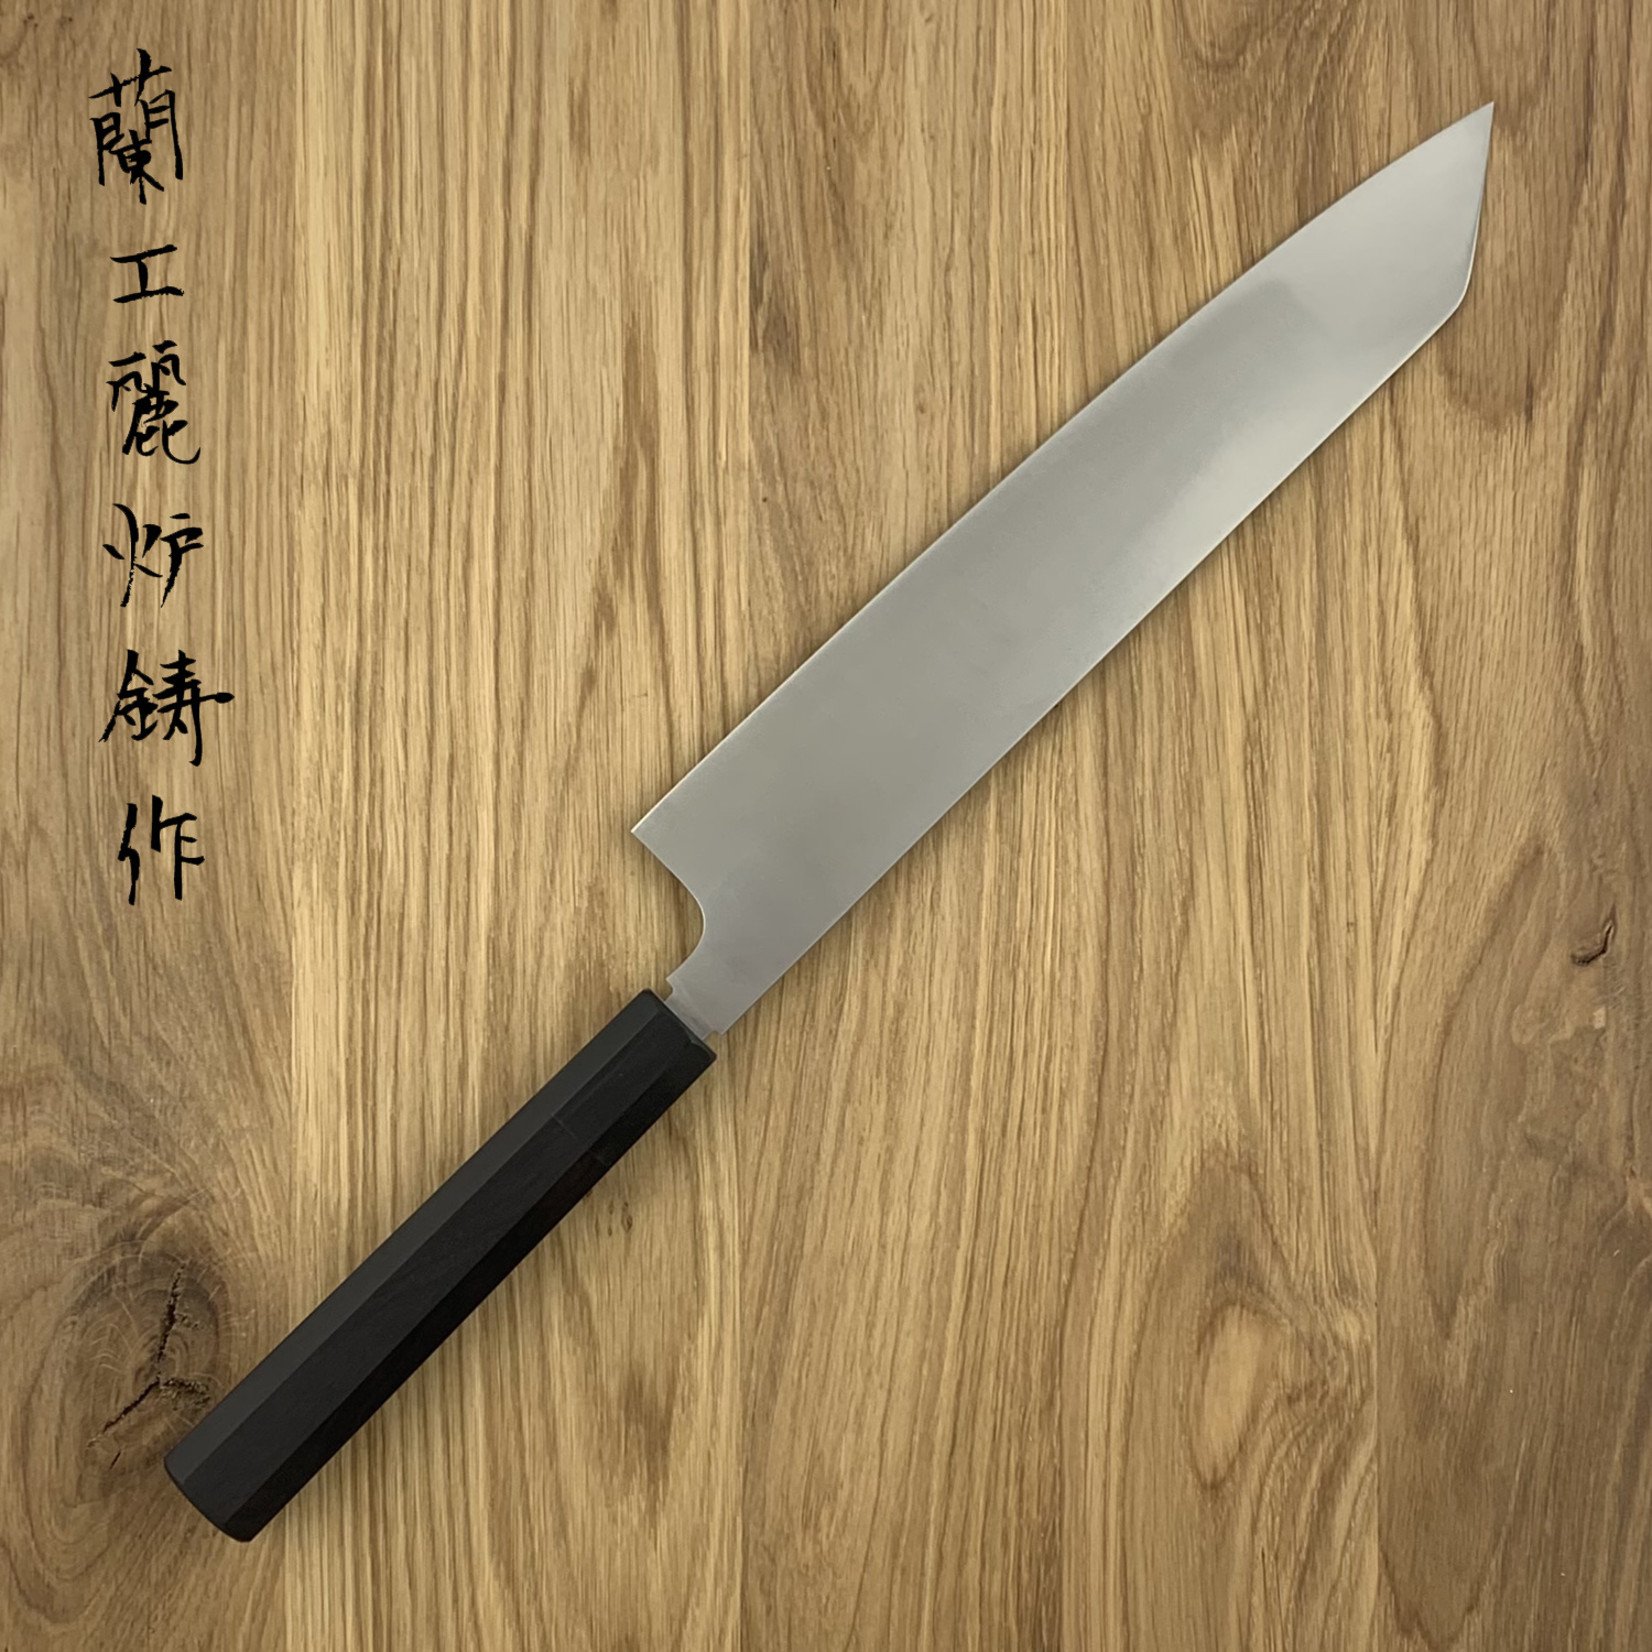 NENOHI double edged Japanese kiritsuke 1.8 mm thick 270 mm octagonal ebony handle